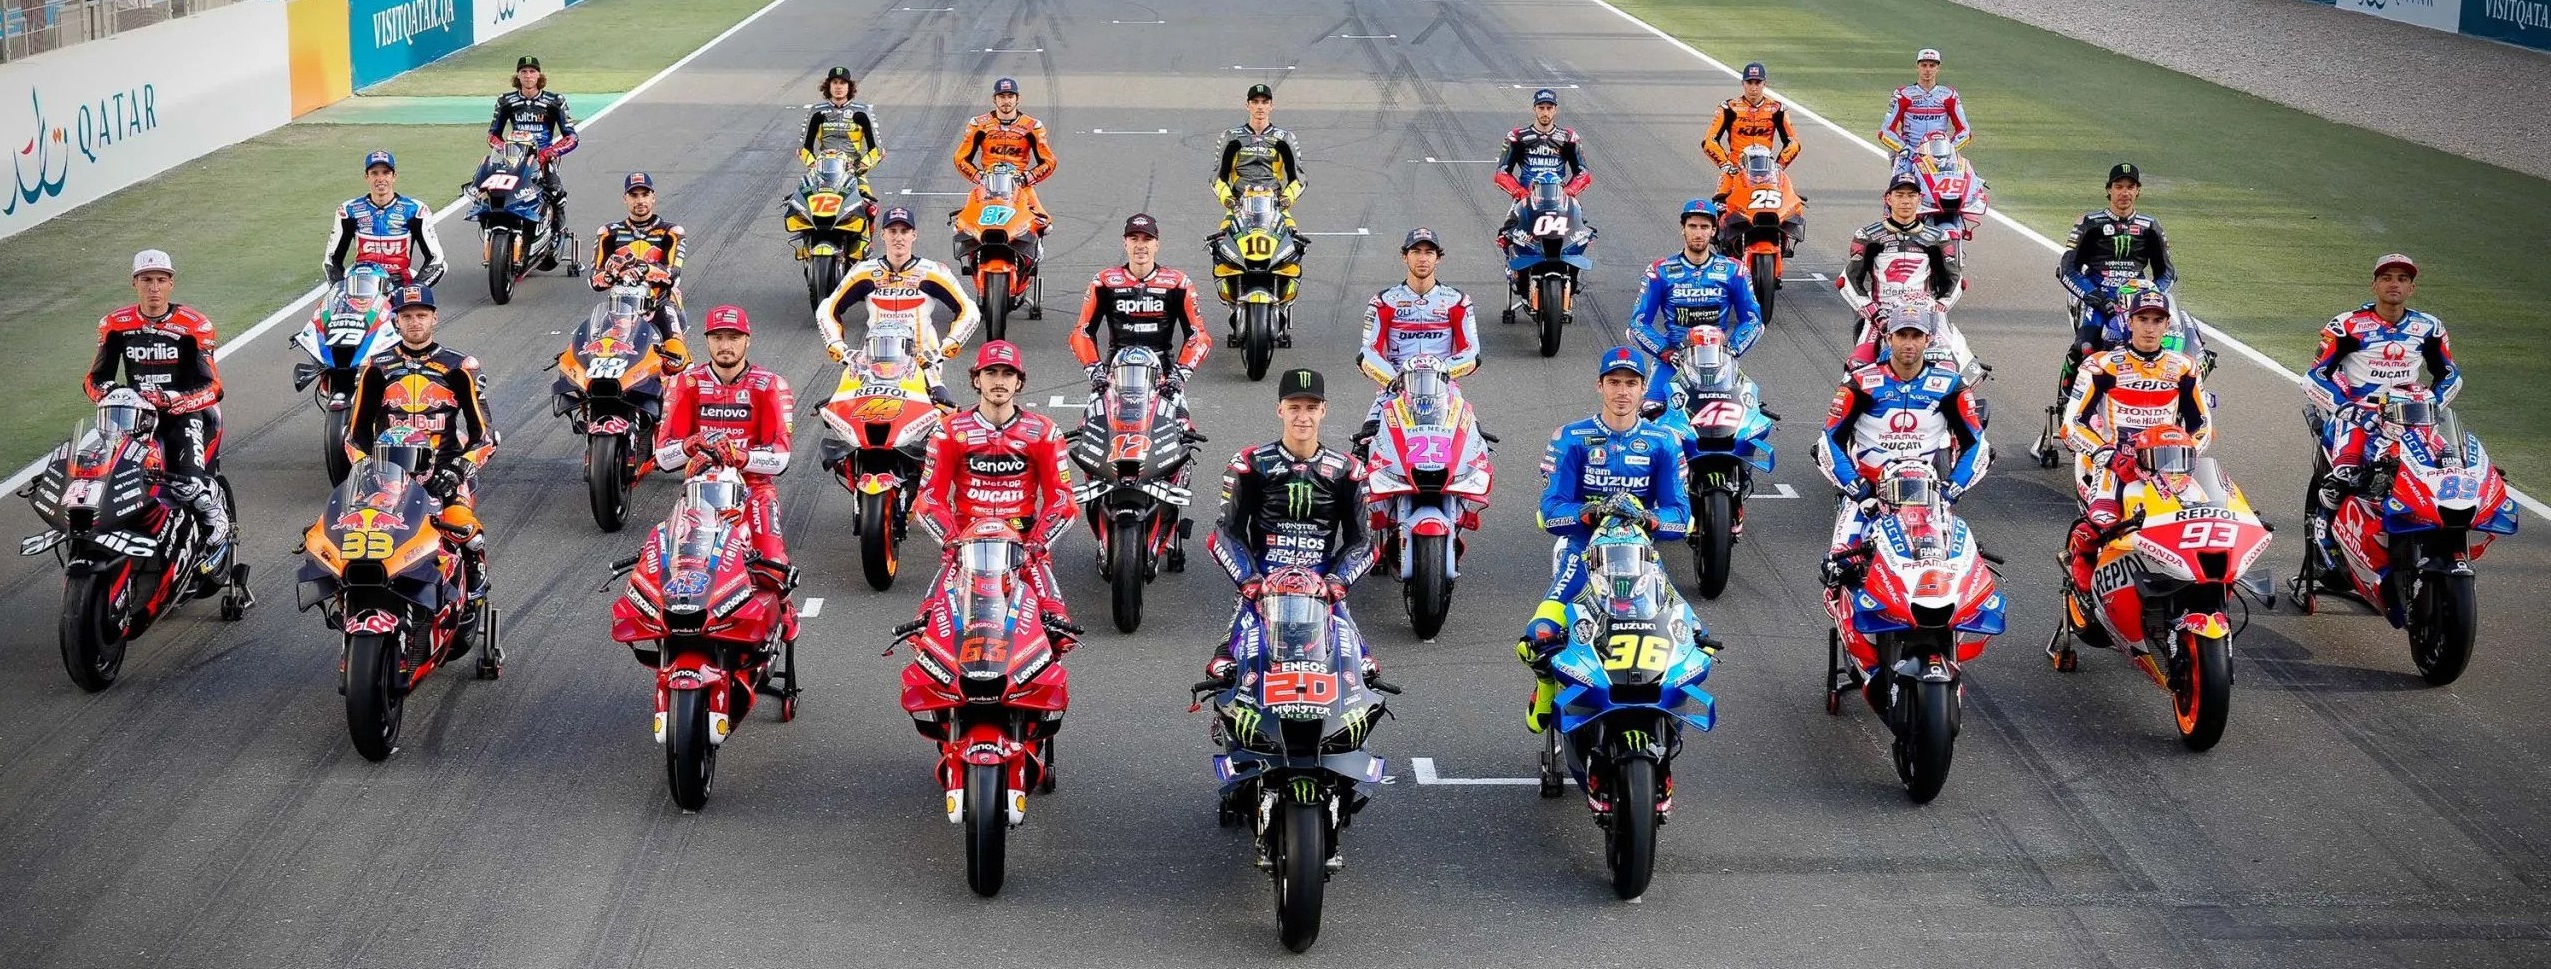 Ada 21 Balapan, Ini Jadwal Lengkap Sementara MotoGP untuk 2023